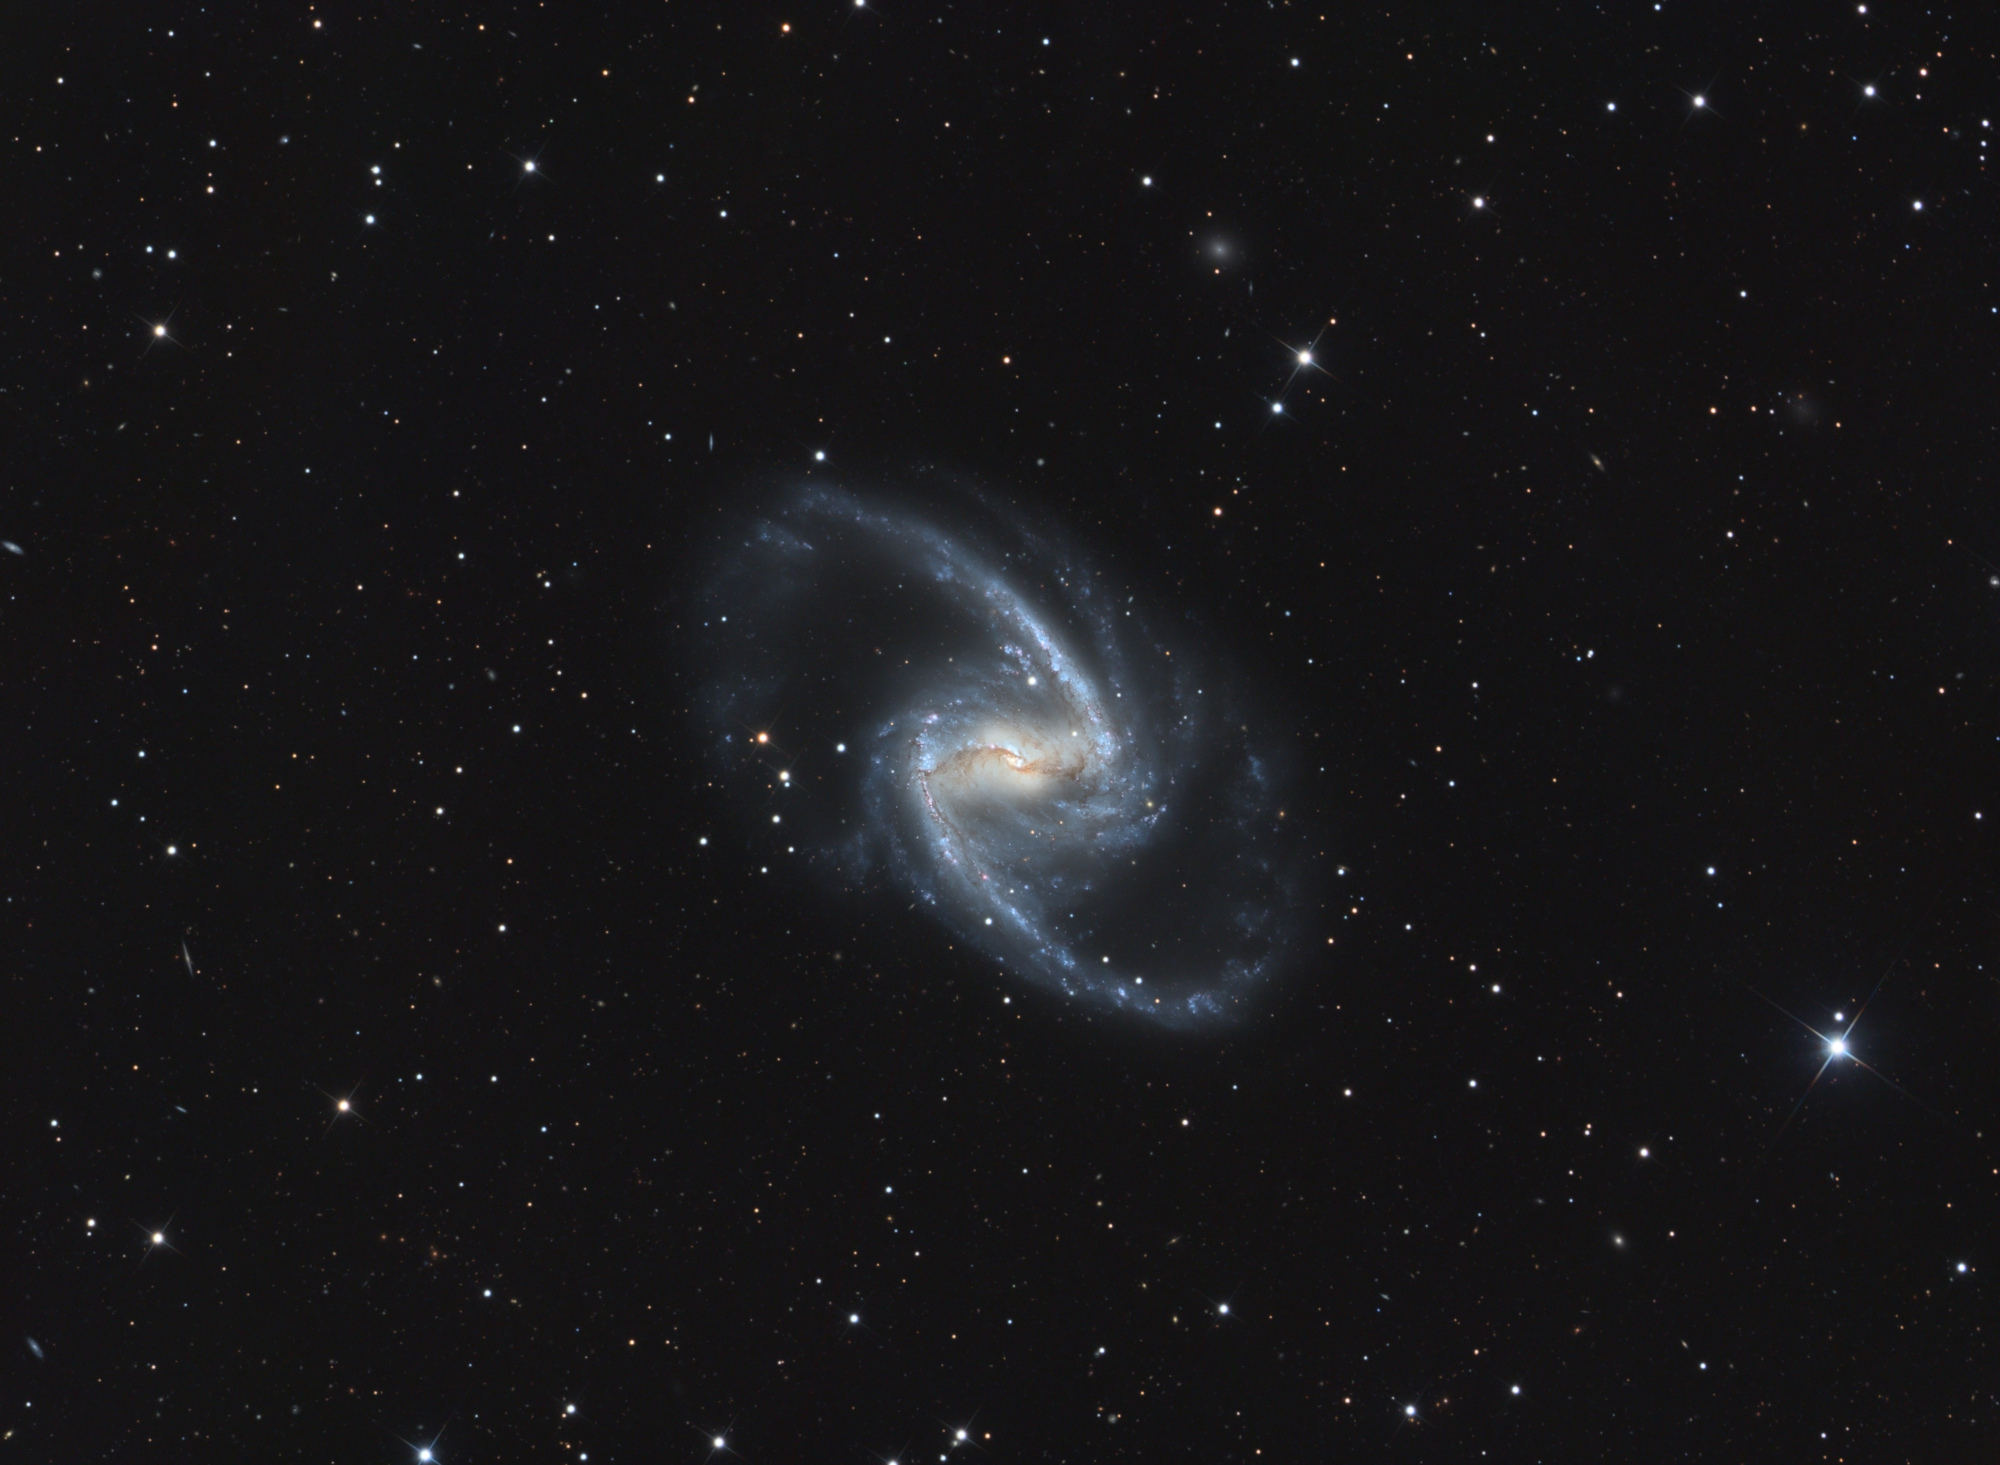 NGC1365_LRVB-V4.thumb.jpg.5f57a051ce5edd146b6a704a0fa01bec.jpg